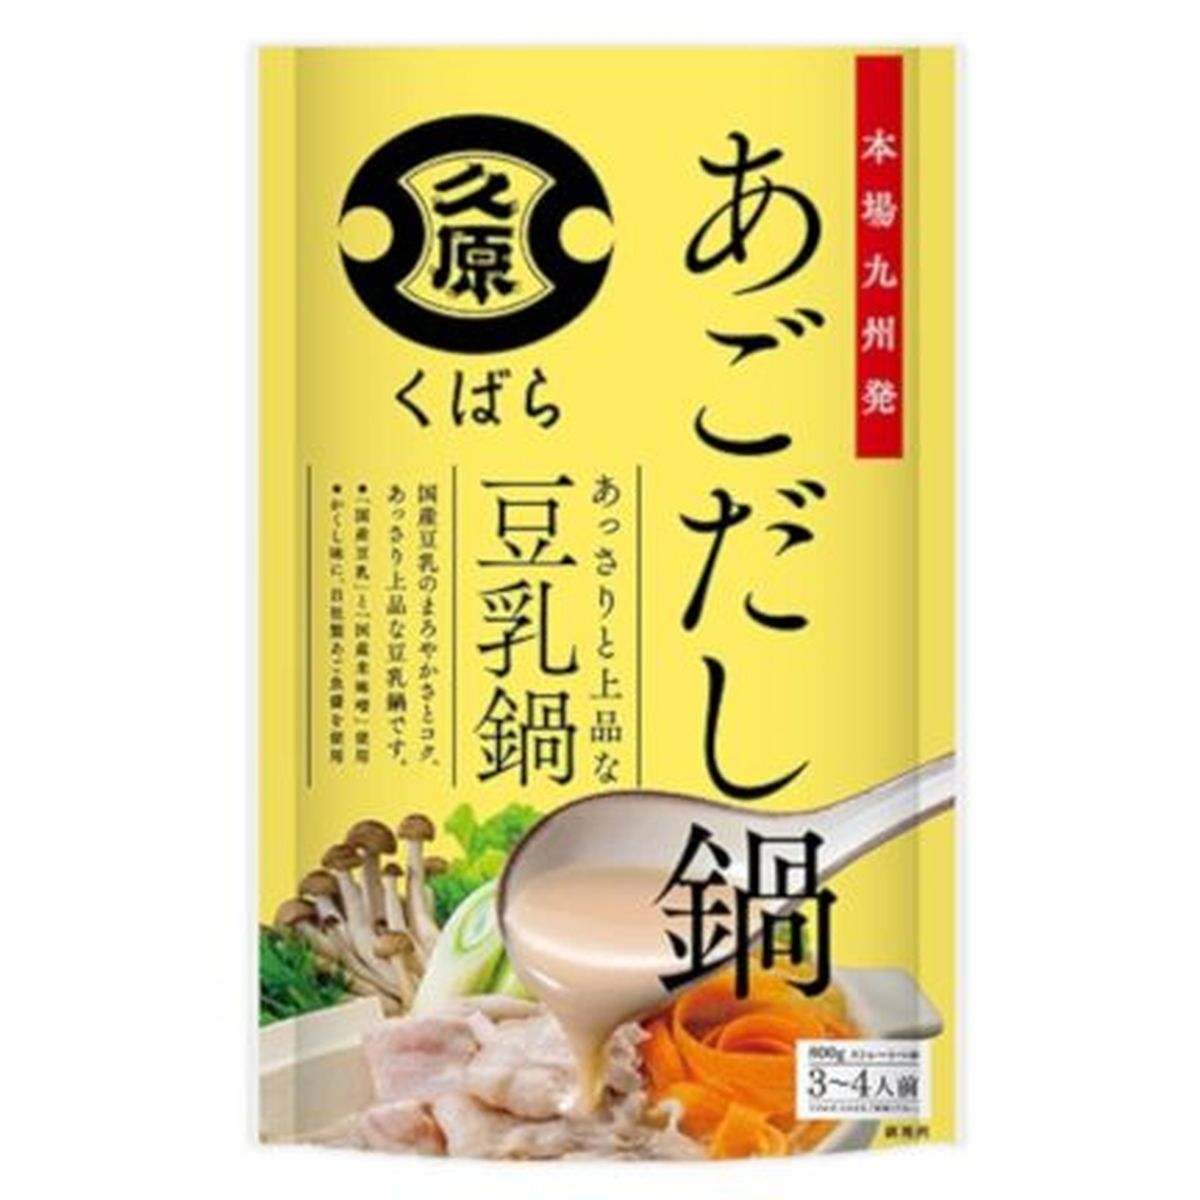 【12個入リ】クバラ アゴダシ鍋 豆乳鍋 800g